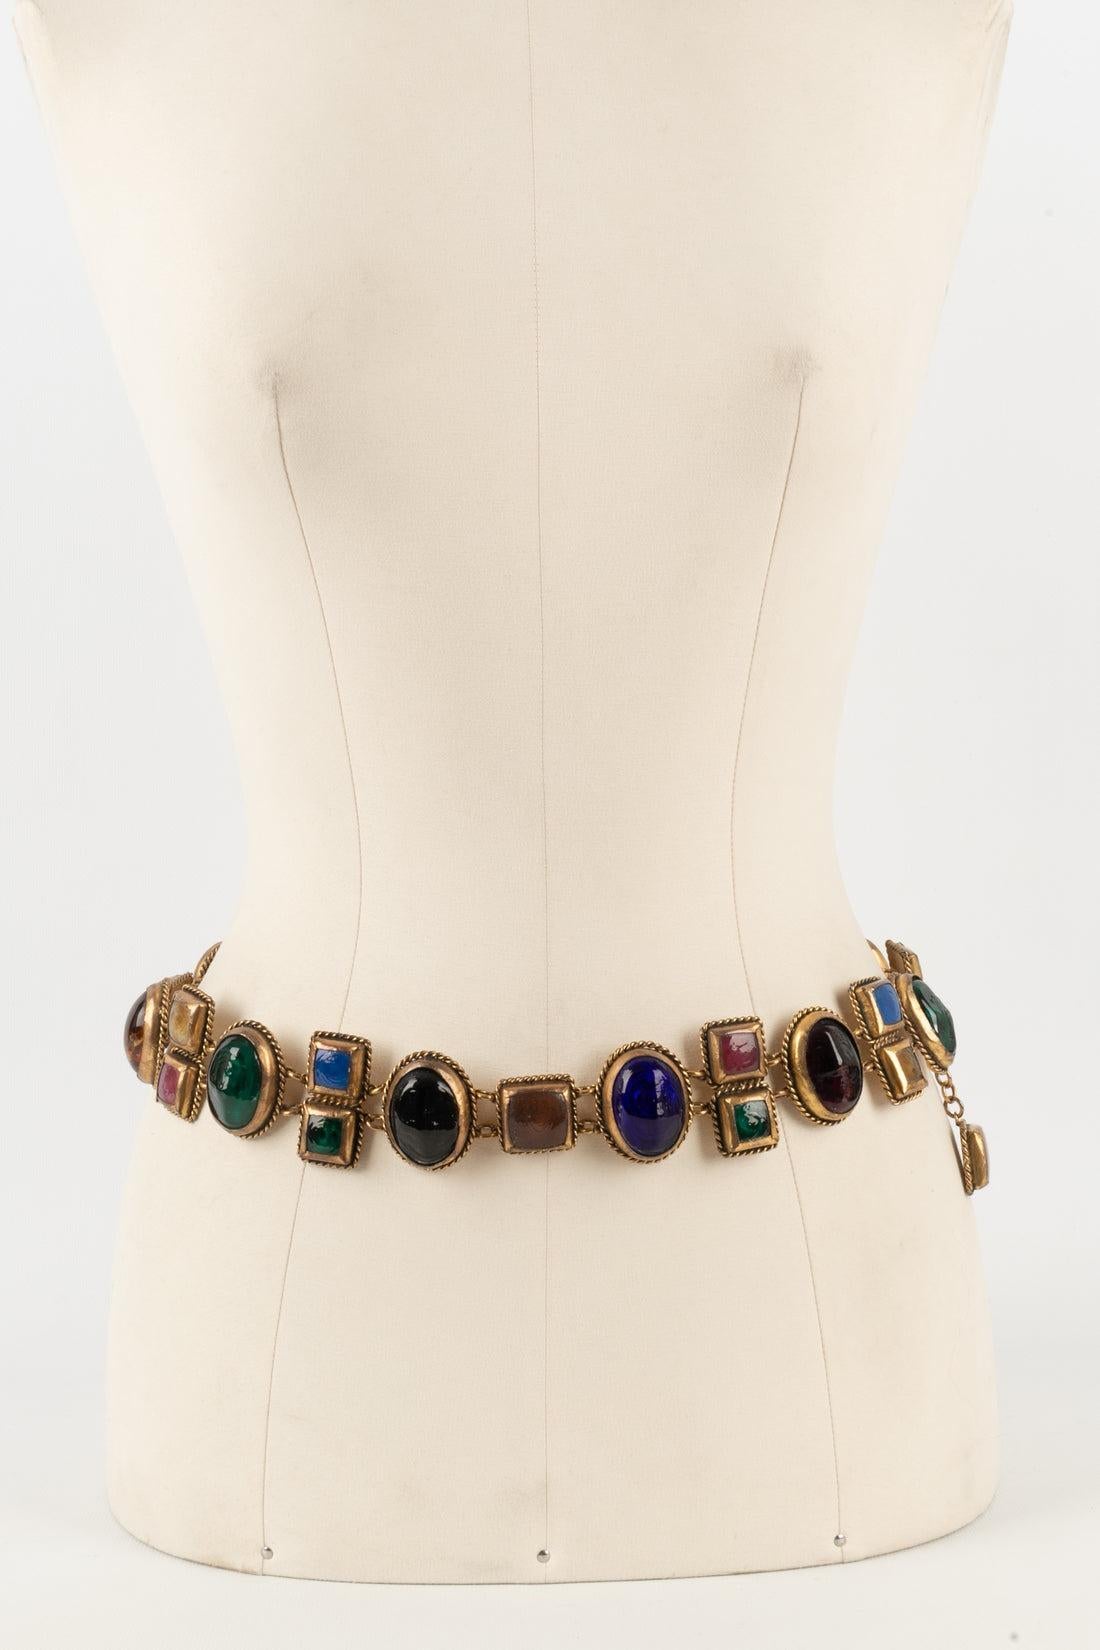 Chanel - Beeindruckender Gürtel aus goldenem Metall, inspiriert vom byzantinischen Stil, verziert mit mehrfarbigen Cabochons aus Glaspaste. Haute Couture Collection'S. Nicht signierte Kreation aus dem Atelier Denez für das Haus Chanel.

Zusätzliche